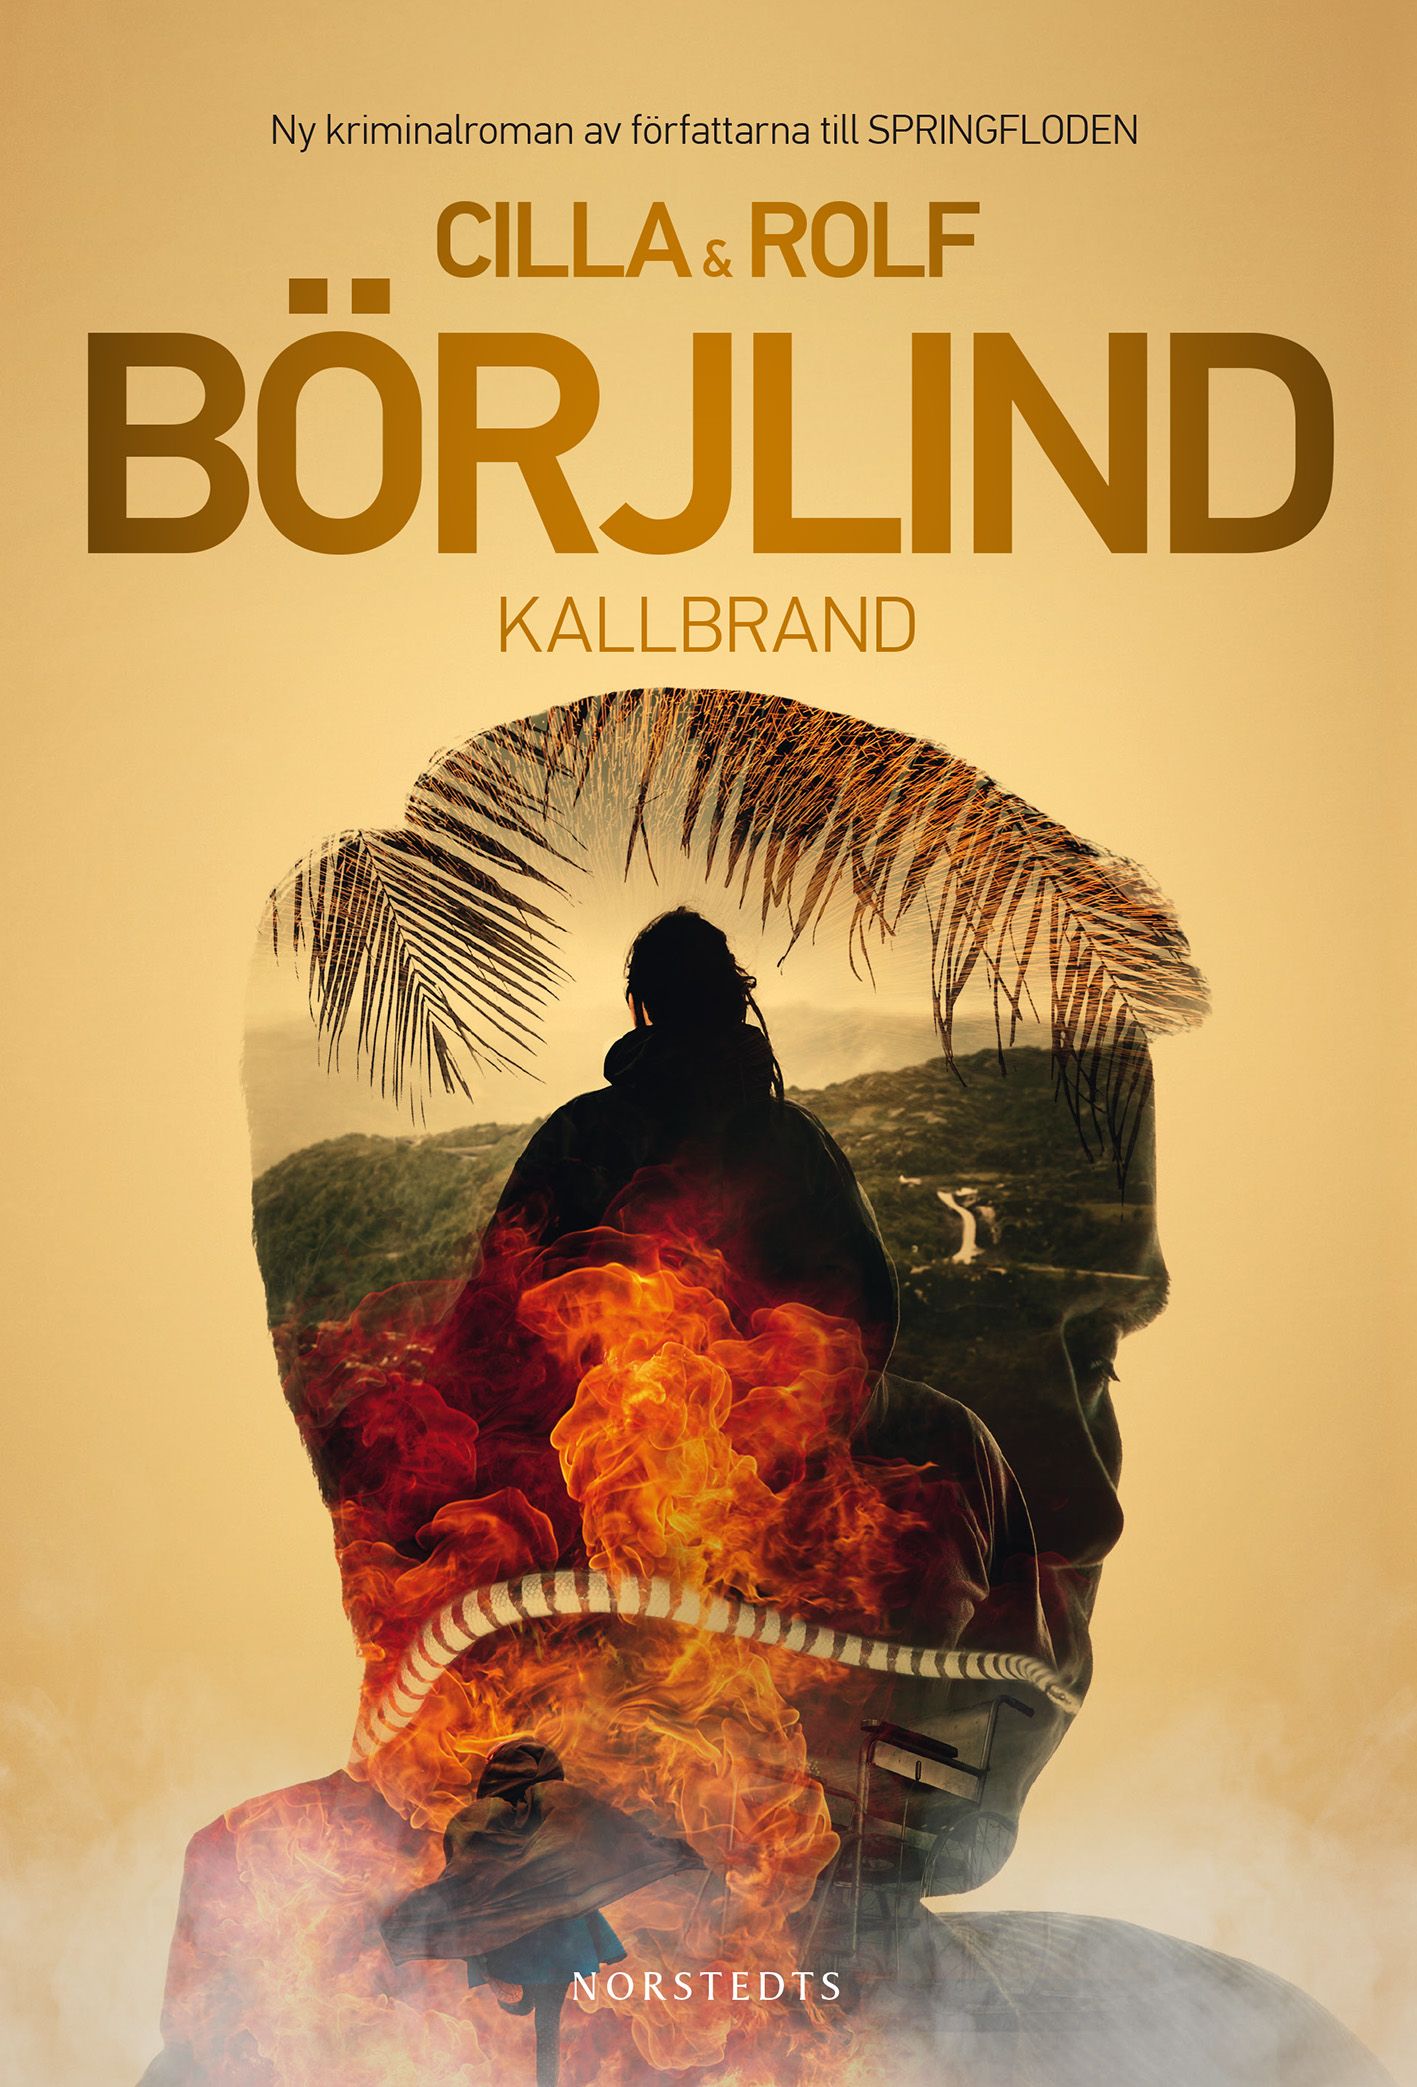 Kallbrand, e-bog af Rolf Börjlind, Cilla Börjlind